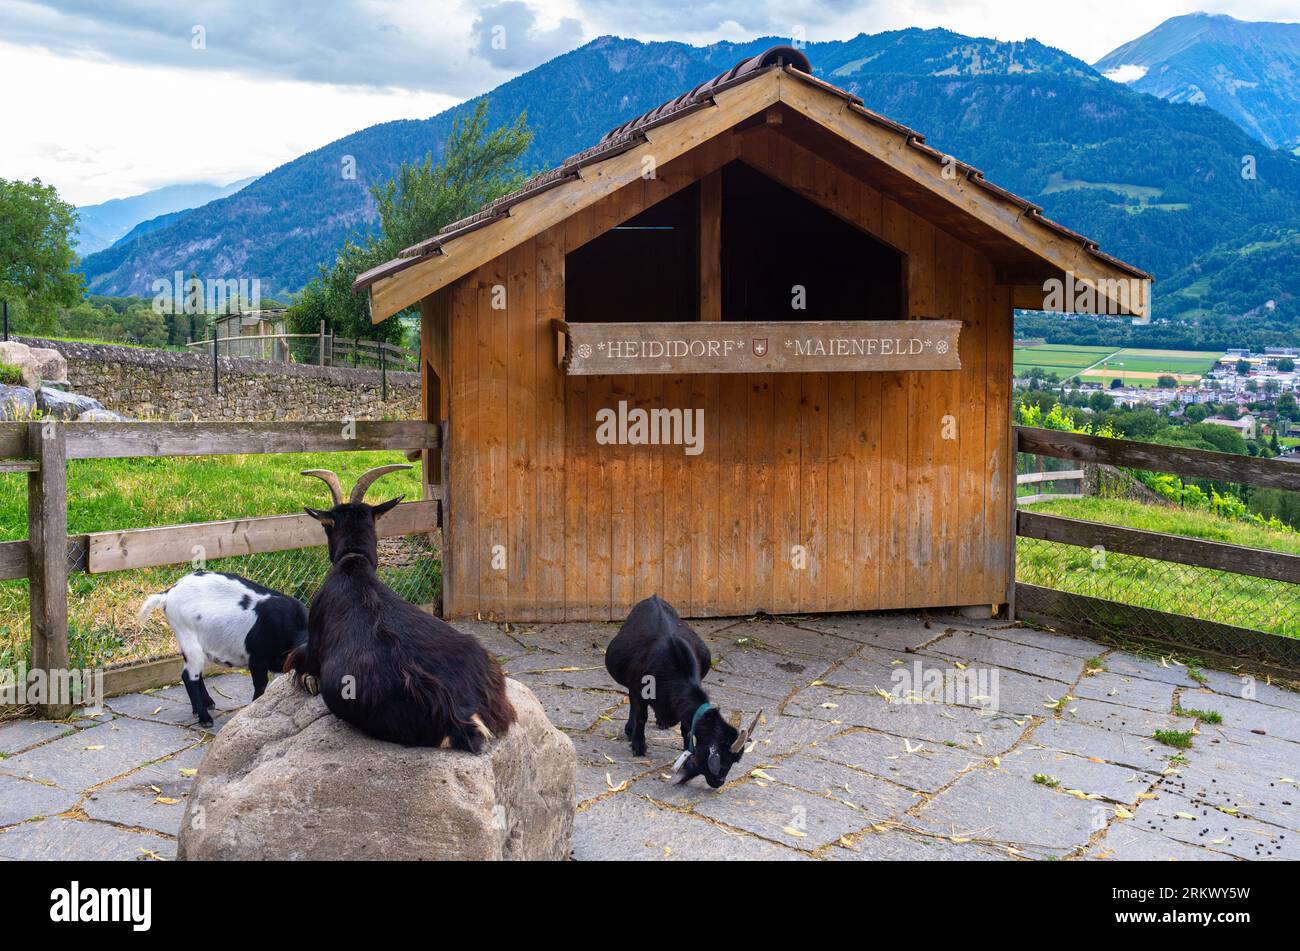 Maienfeld, Suisse - 25 juillet 2023 : chèvres au village du personnage de film et de dessin animé Heidi près de Maienfeld dans le canton suisse de Graubunden -GRI Banque D'Images